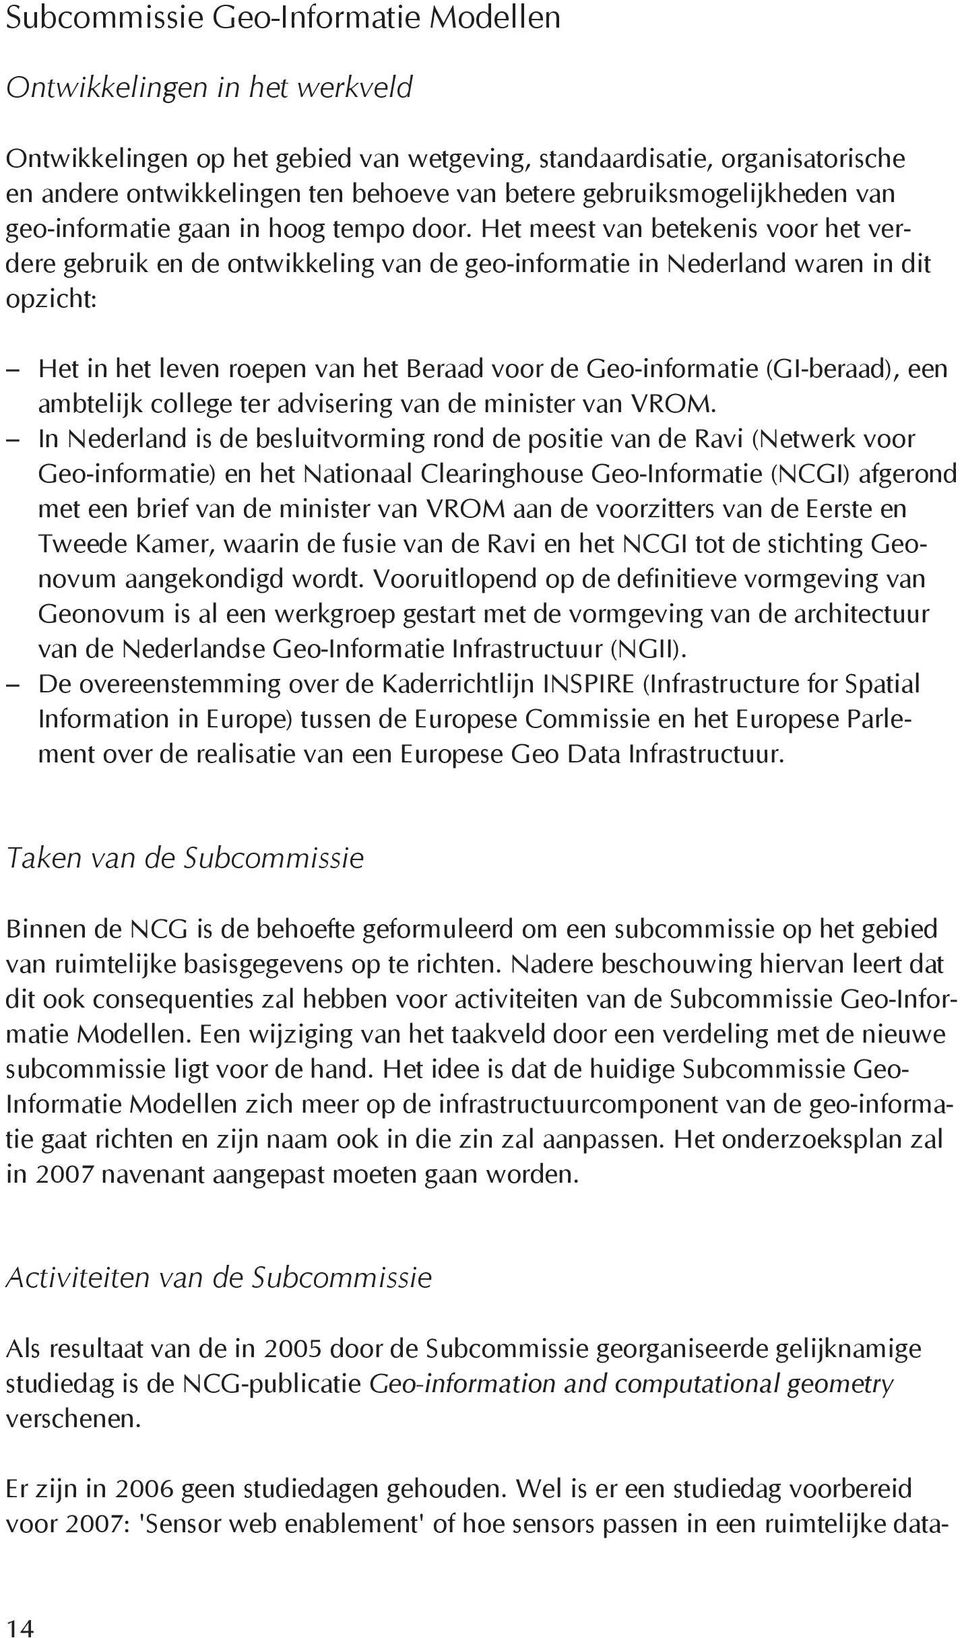 Het meest van betekenis voor het verdere gebruik en de ontwikkeling van de geo-informatie in Nederland waren in dit opzicht: Het in het leven roepen van het Beraad voor de Geo-informatie (GI-beraad),